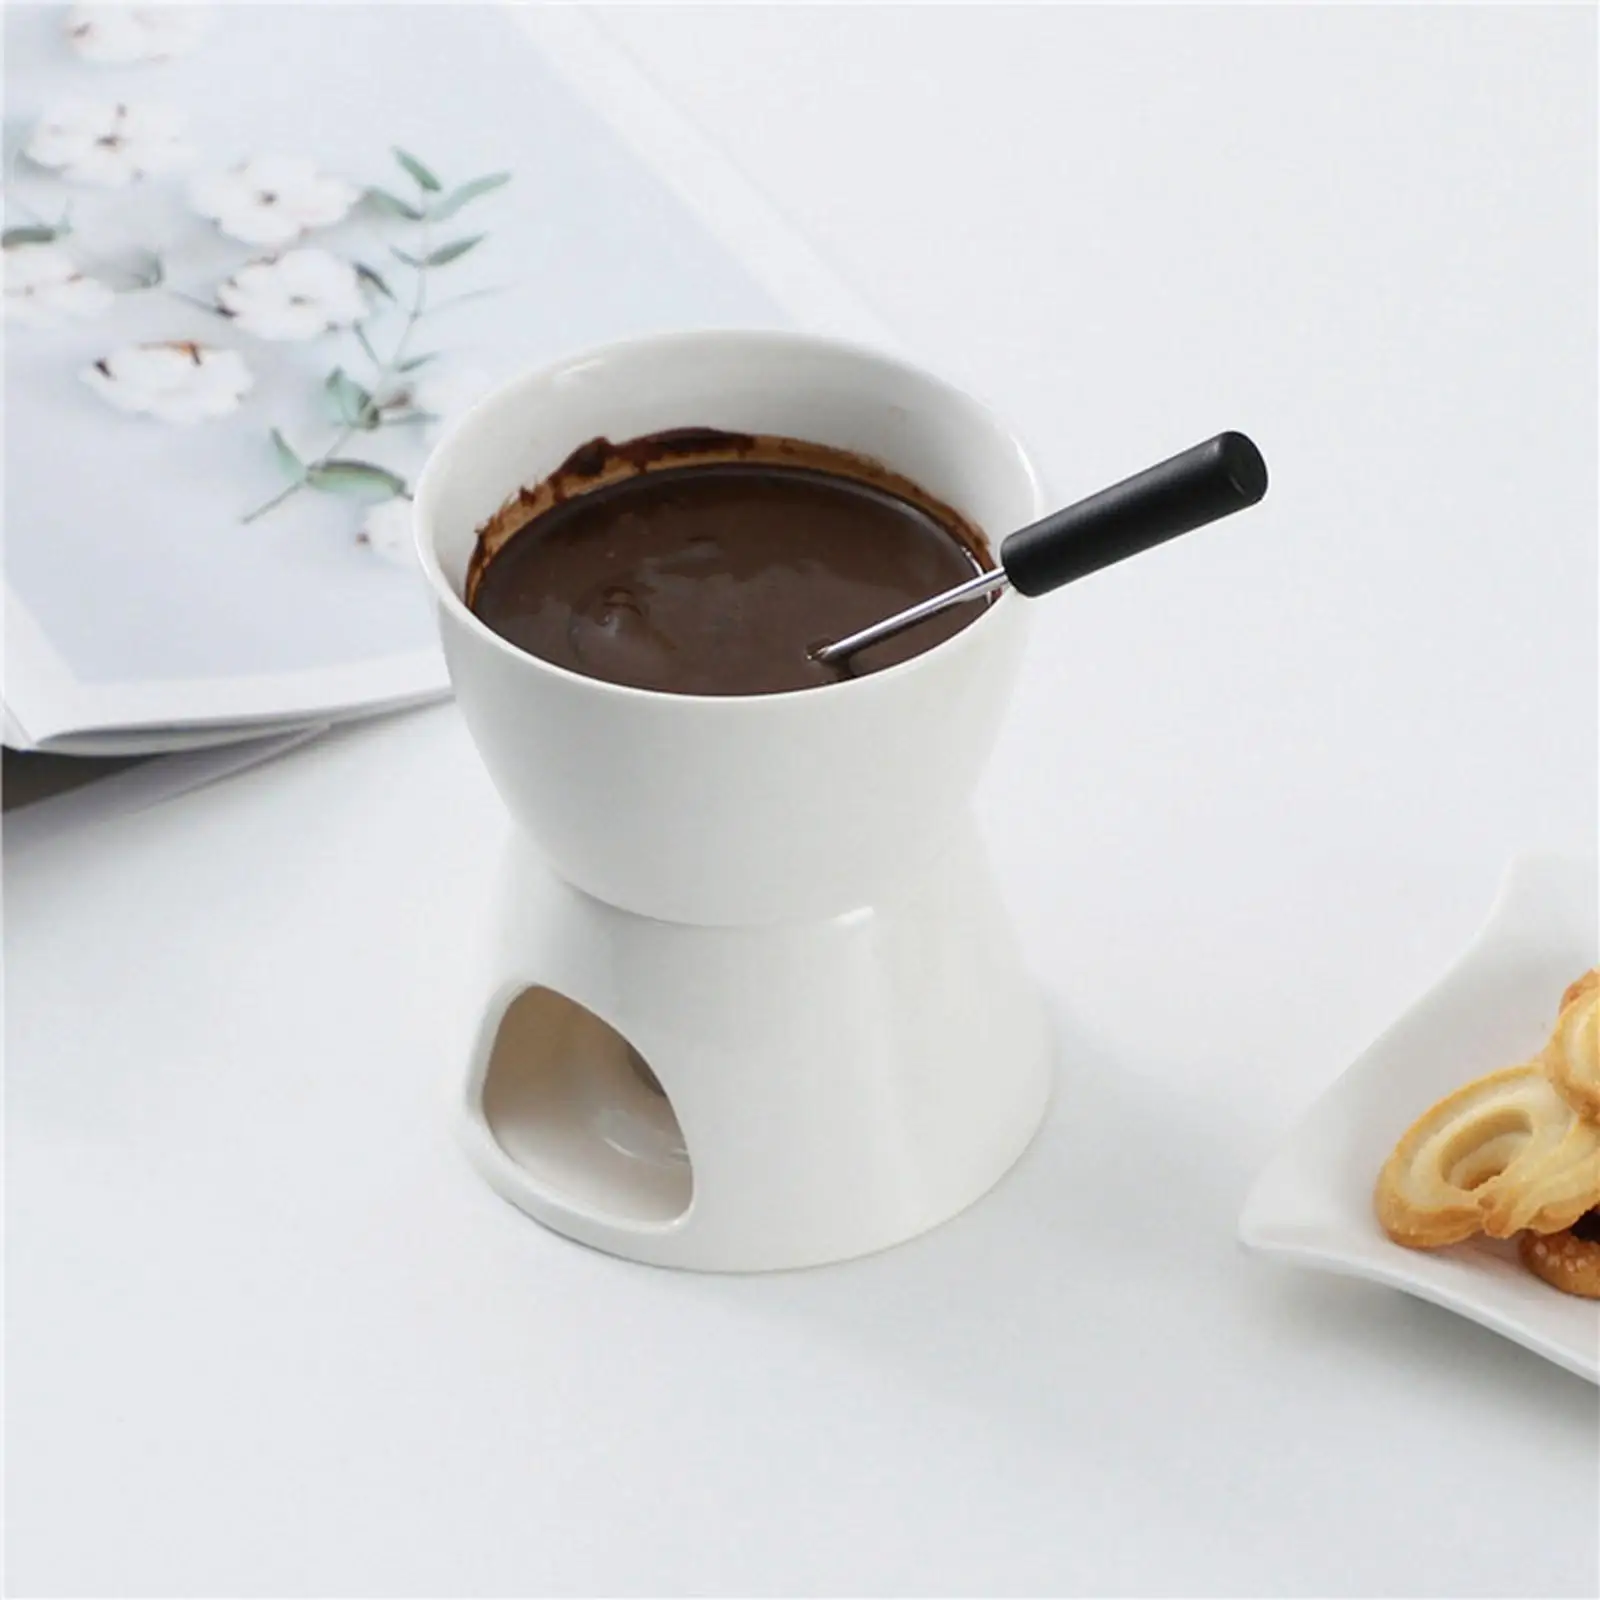 Chocolate Fondue Pot Butter Warmer Cookware Ceramic Hot Pot Tea Light Porcelain